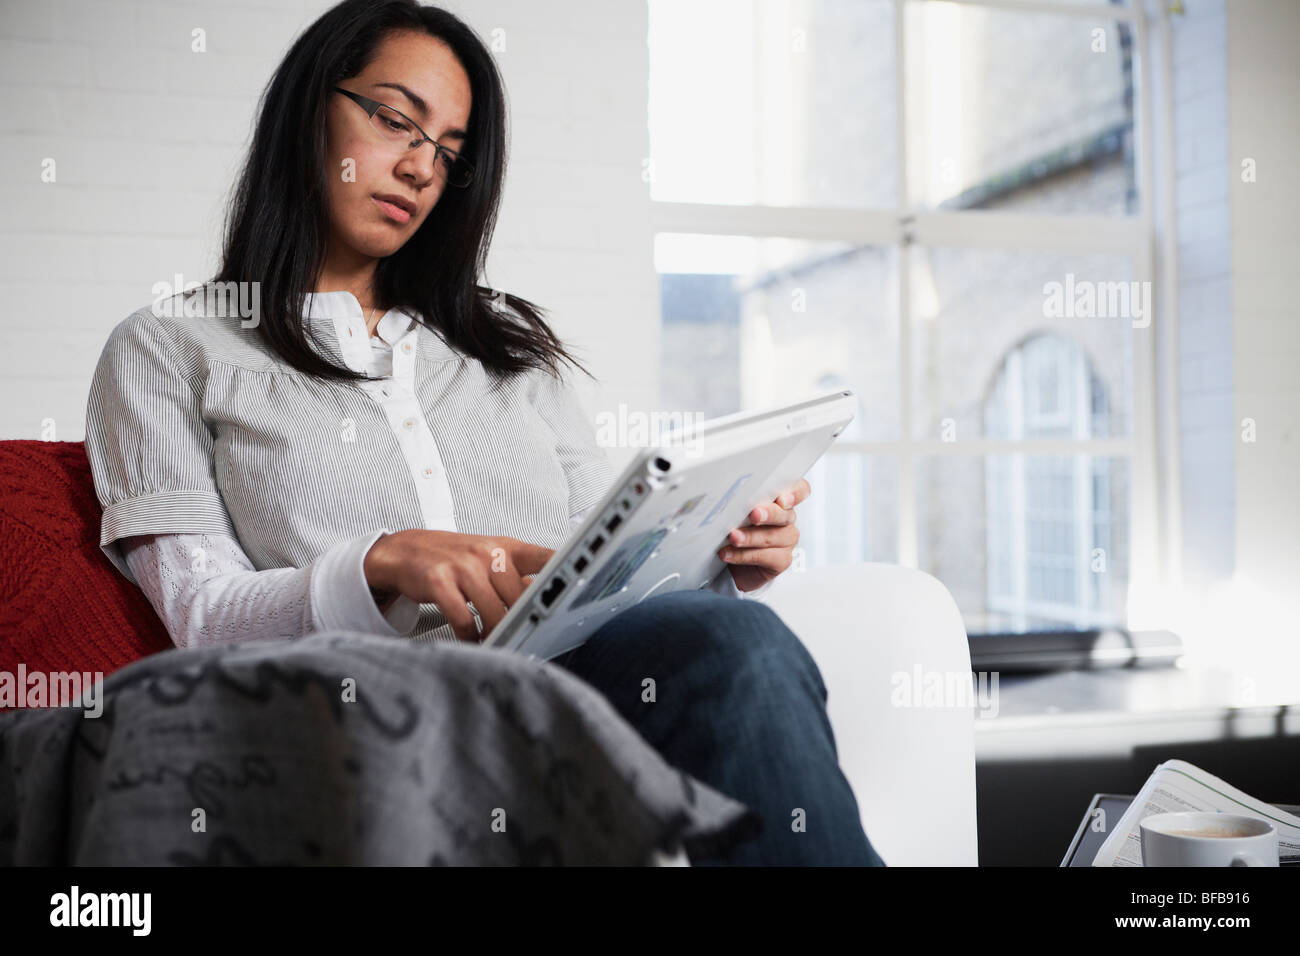 Une femme utilise un tablet PC dans un environnement accueillant, birght Banque D'Images